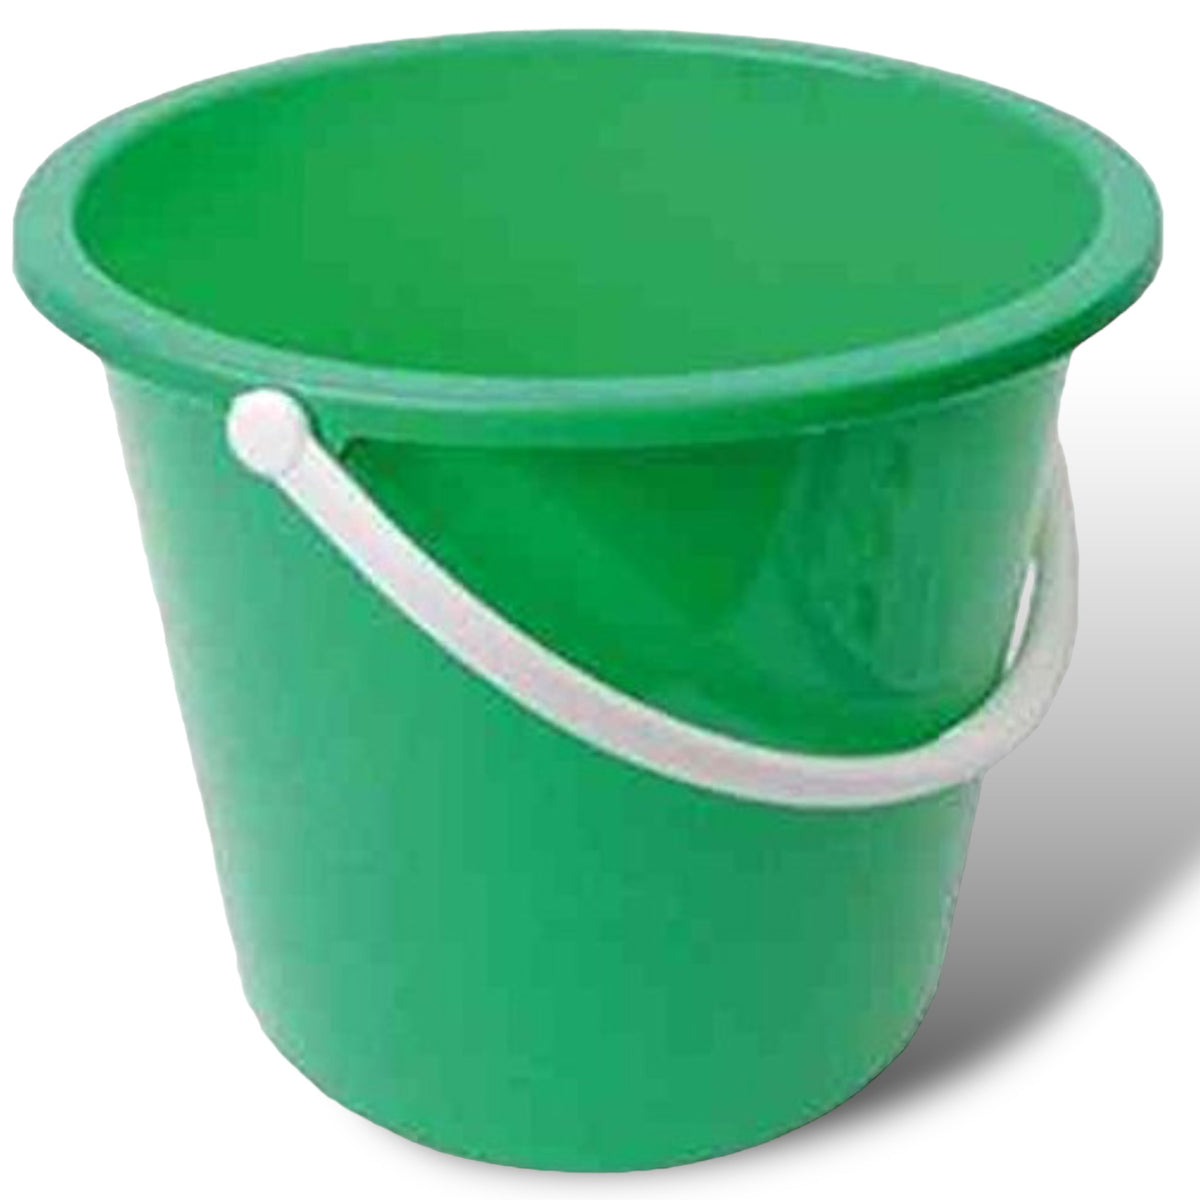 Robert Scott 10 Litre Green Bucket with Swing Handle